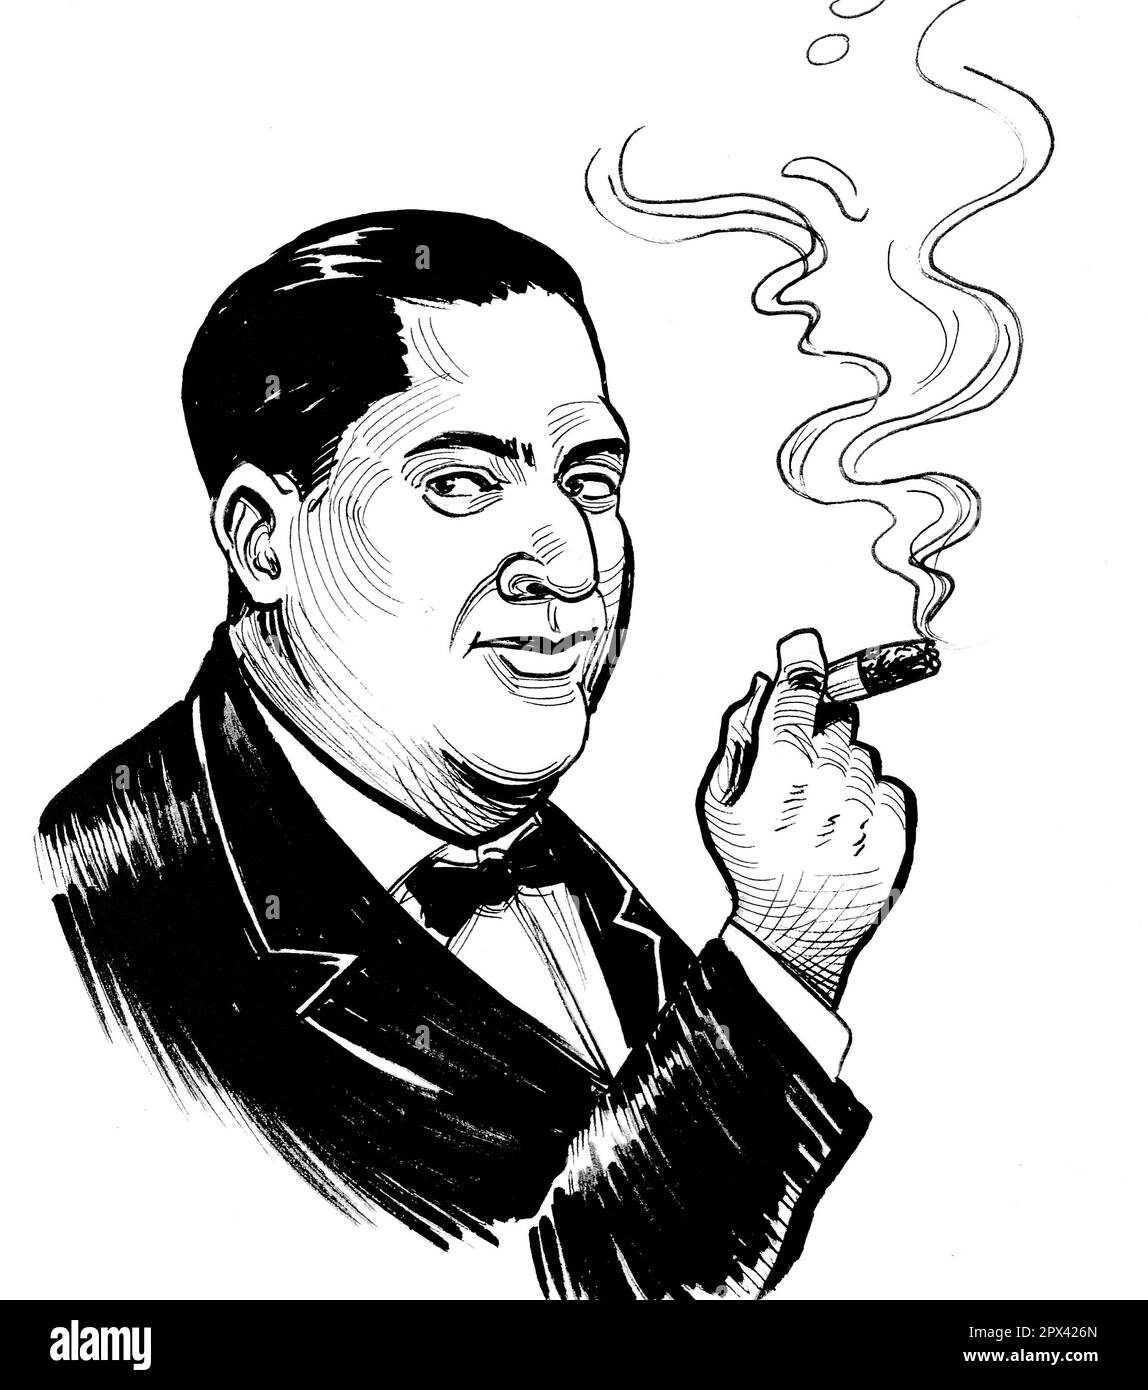 Sigaro fumante uomo ricco. Inchiostro disegnato a mano in stile retrò su uno schizzo di carta. Foto Stock